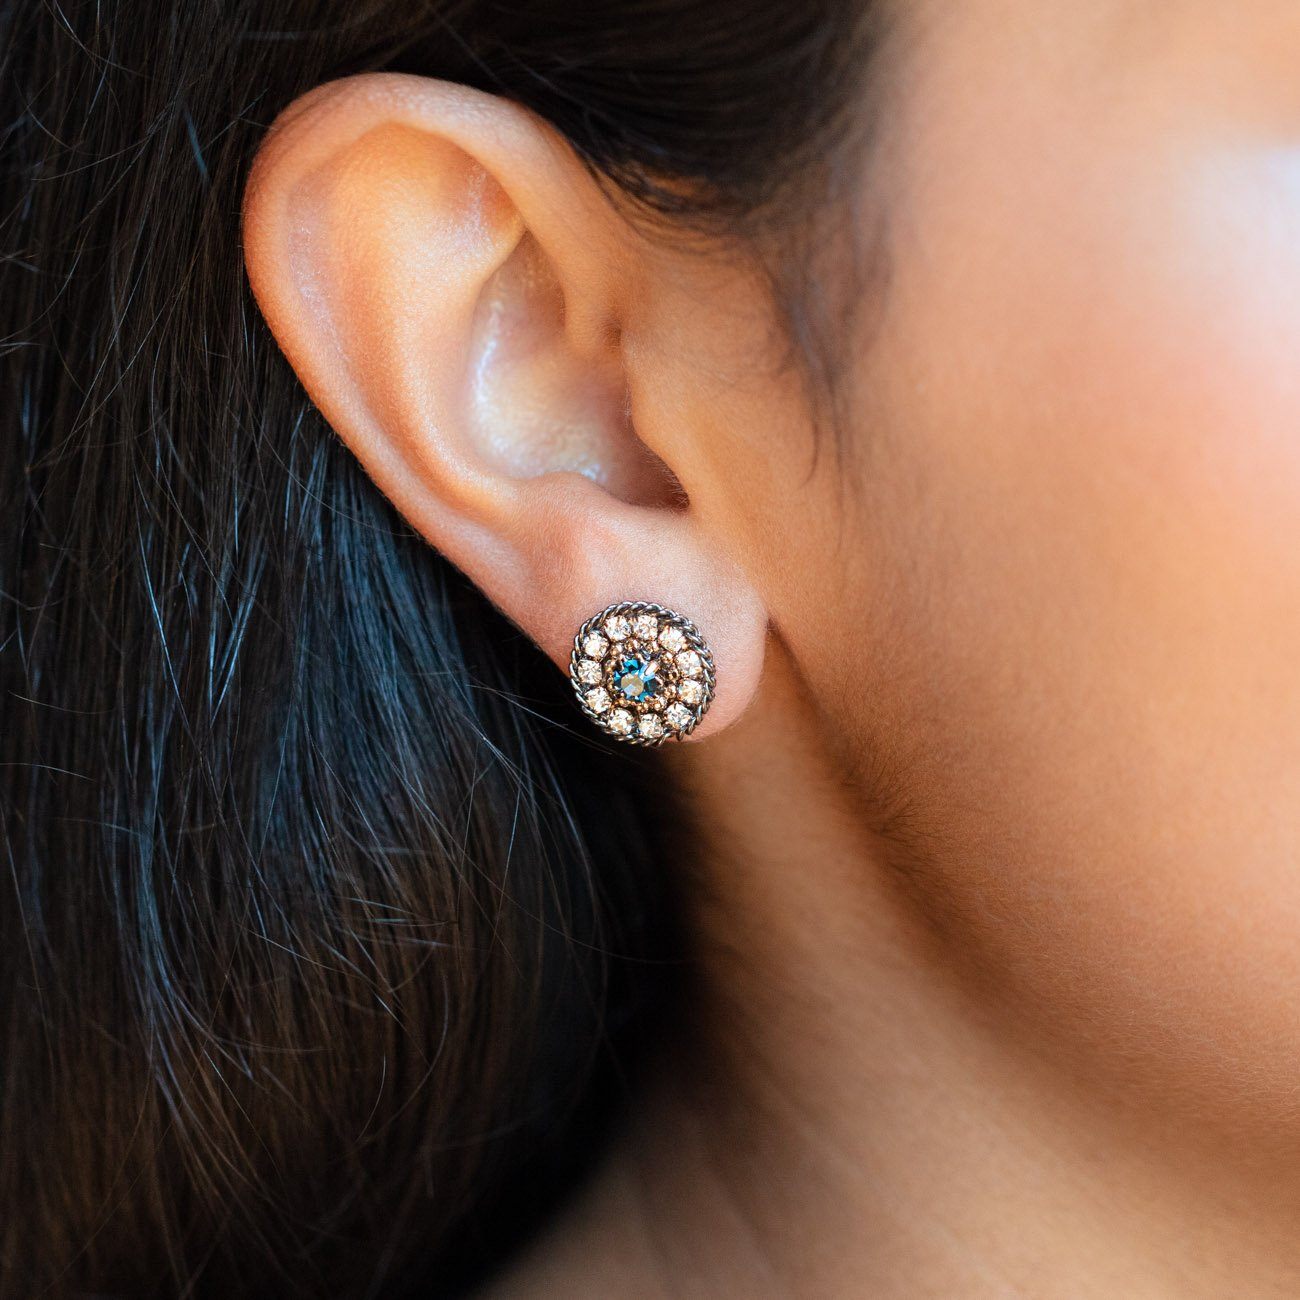 Odyssey Stud Earrings in Midnight statement stud earrings